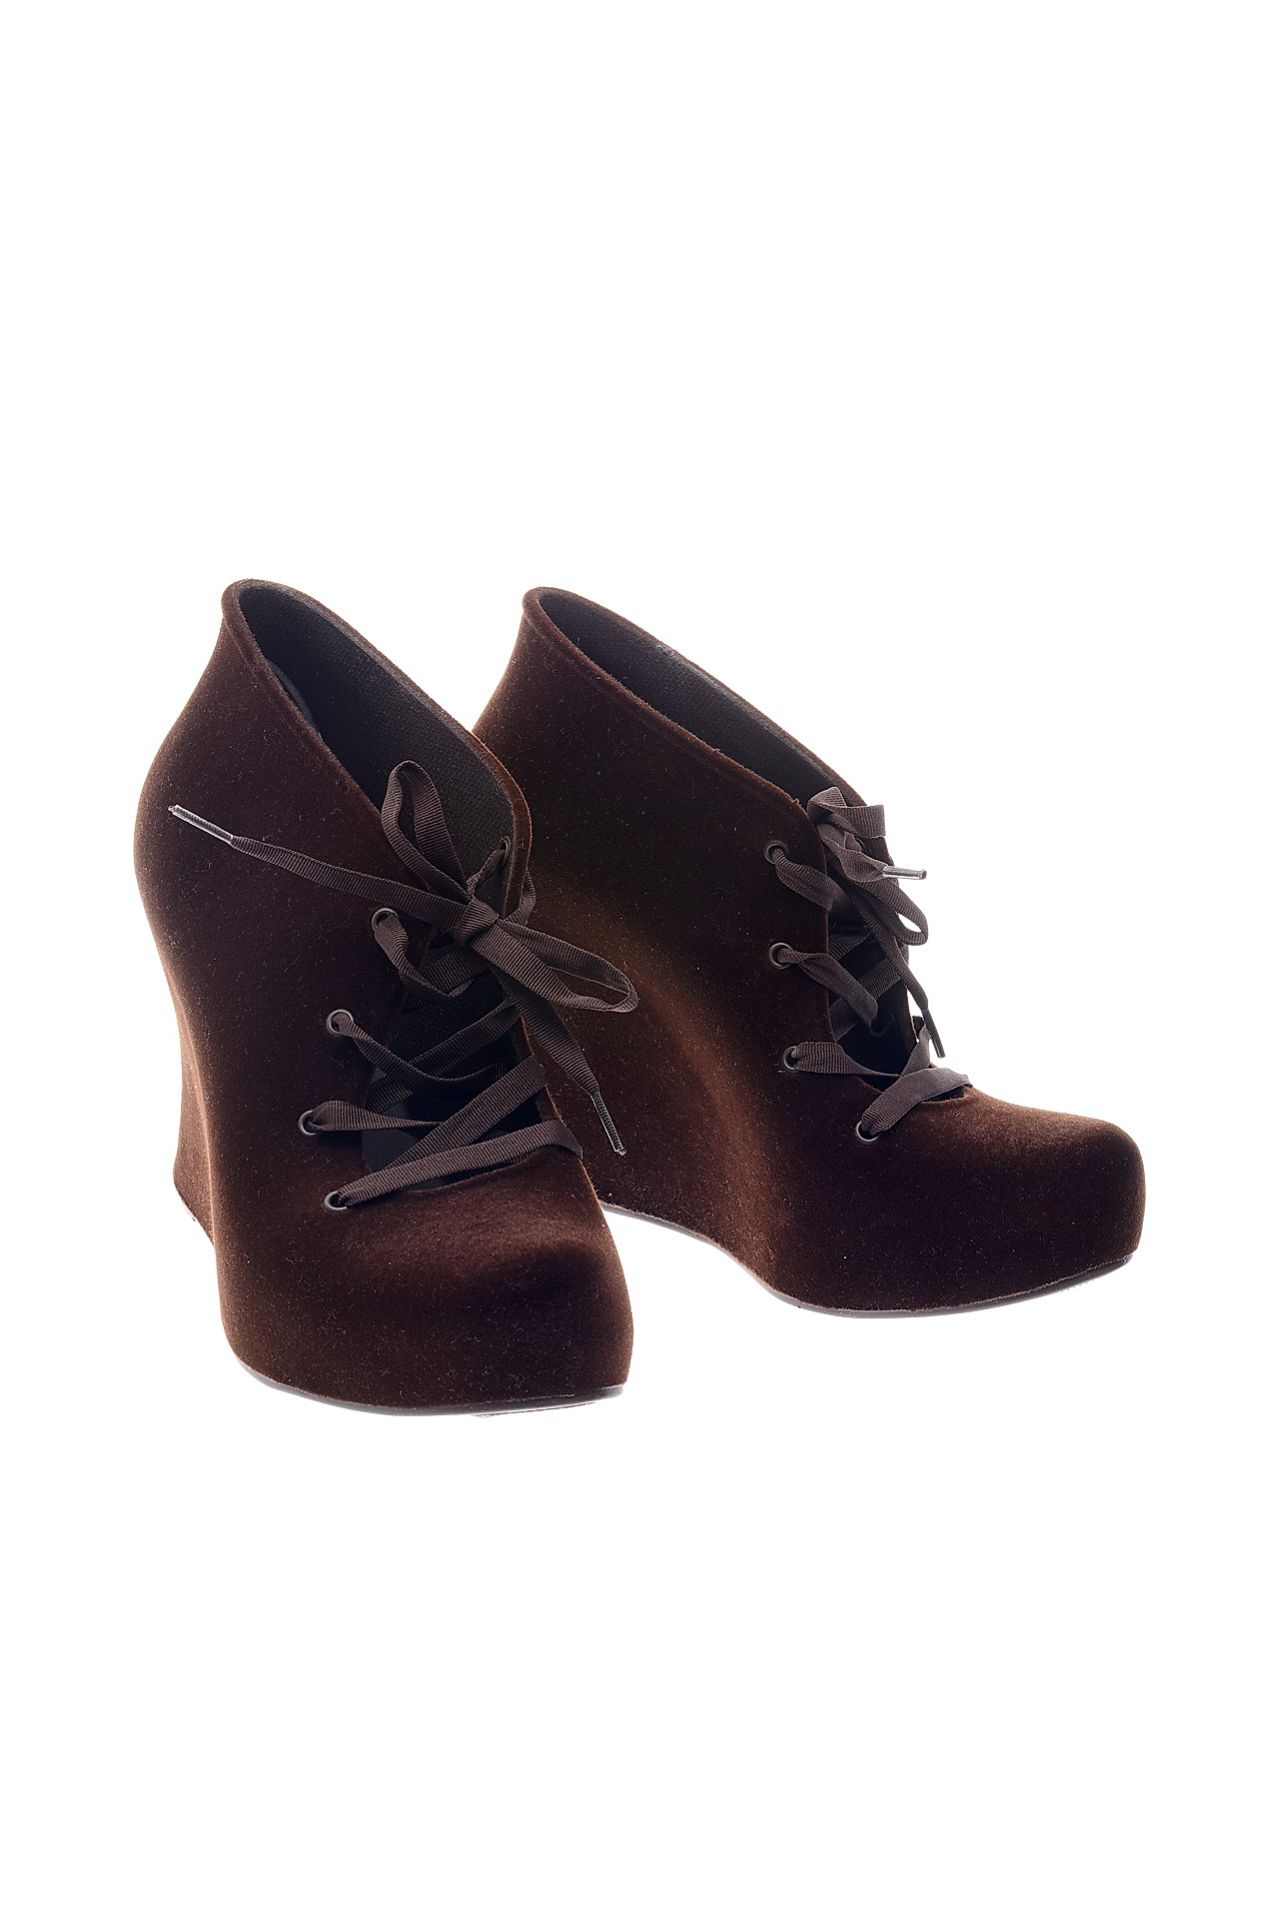 Обувь женская Ботинки MELISSA (30652/11.2). Купить за 6950 руб.